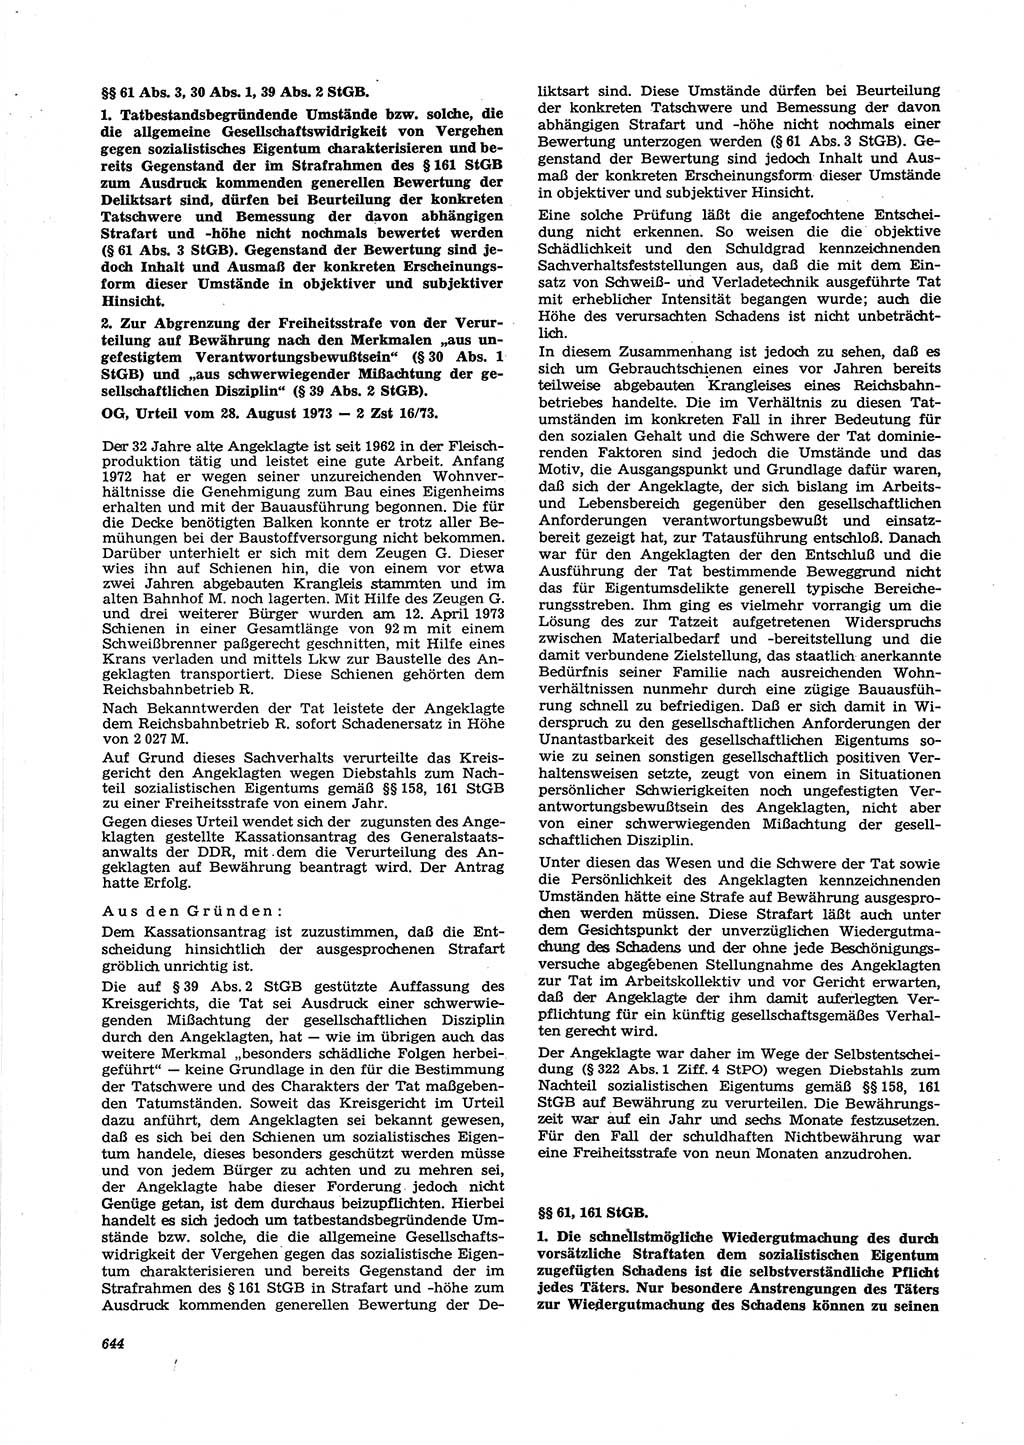 Neue Justiz (NJ), Zeitschrift für Recht und Rechtswissenschaft [Deutsche Demokratische Republik (DDR)], 27. Jahrgang 1973, Seite 644 (NJ DDR 1973, S. 644)